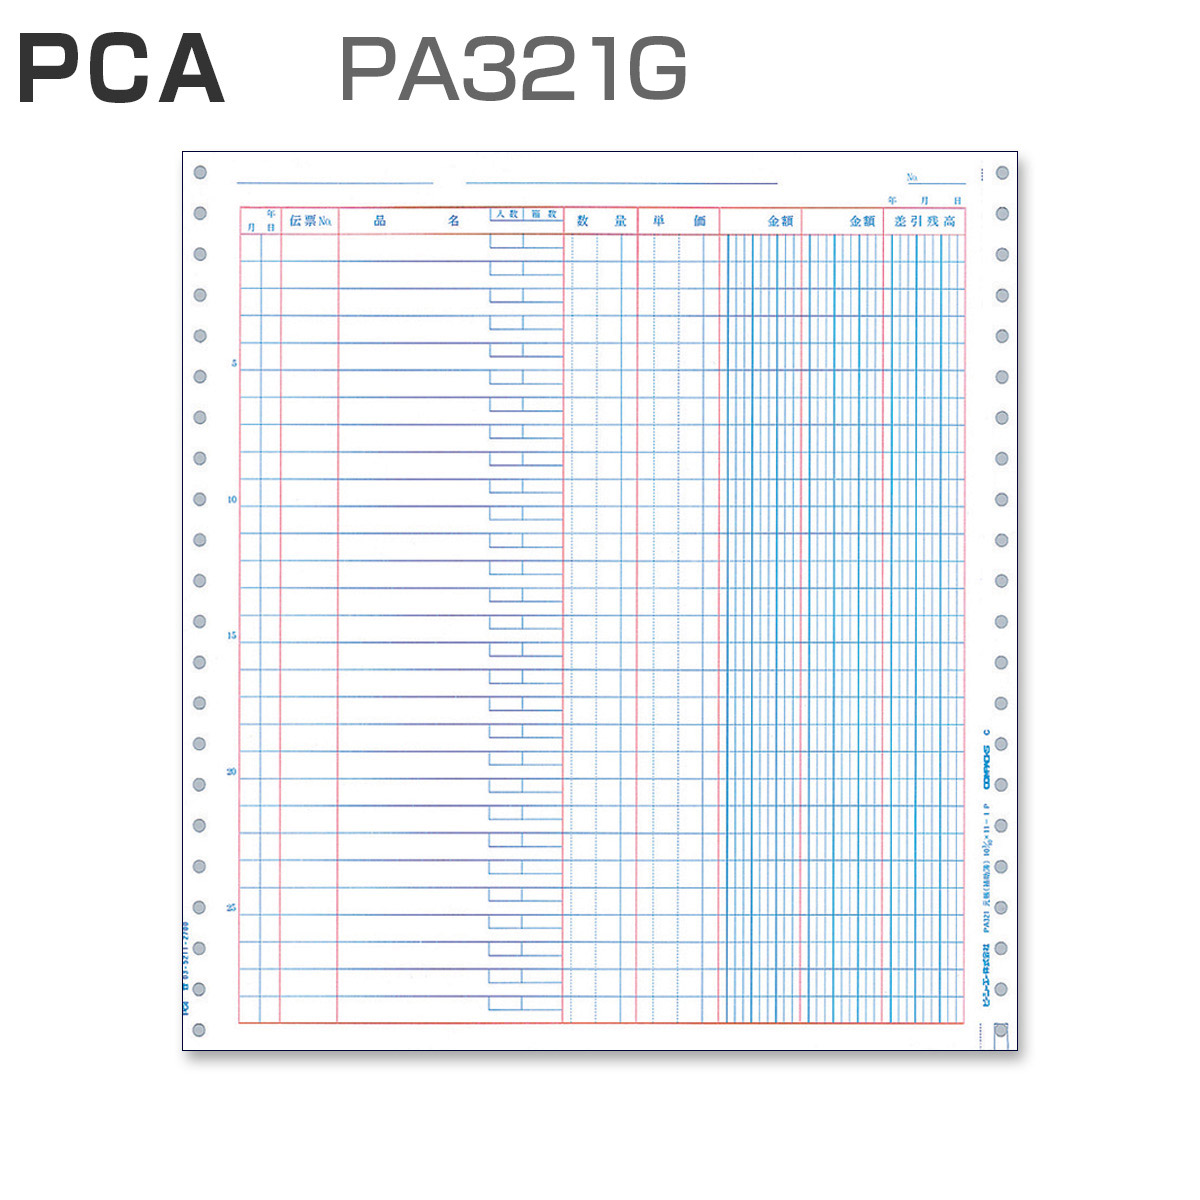 パナシア】 PCA PA321G 元帳 (500枚)